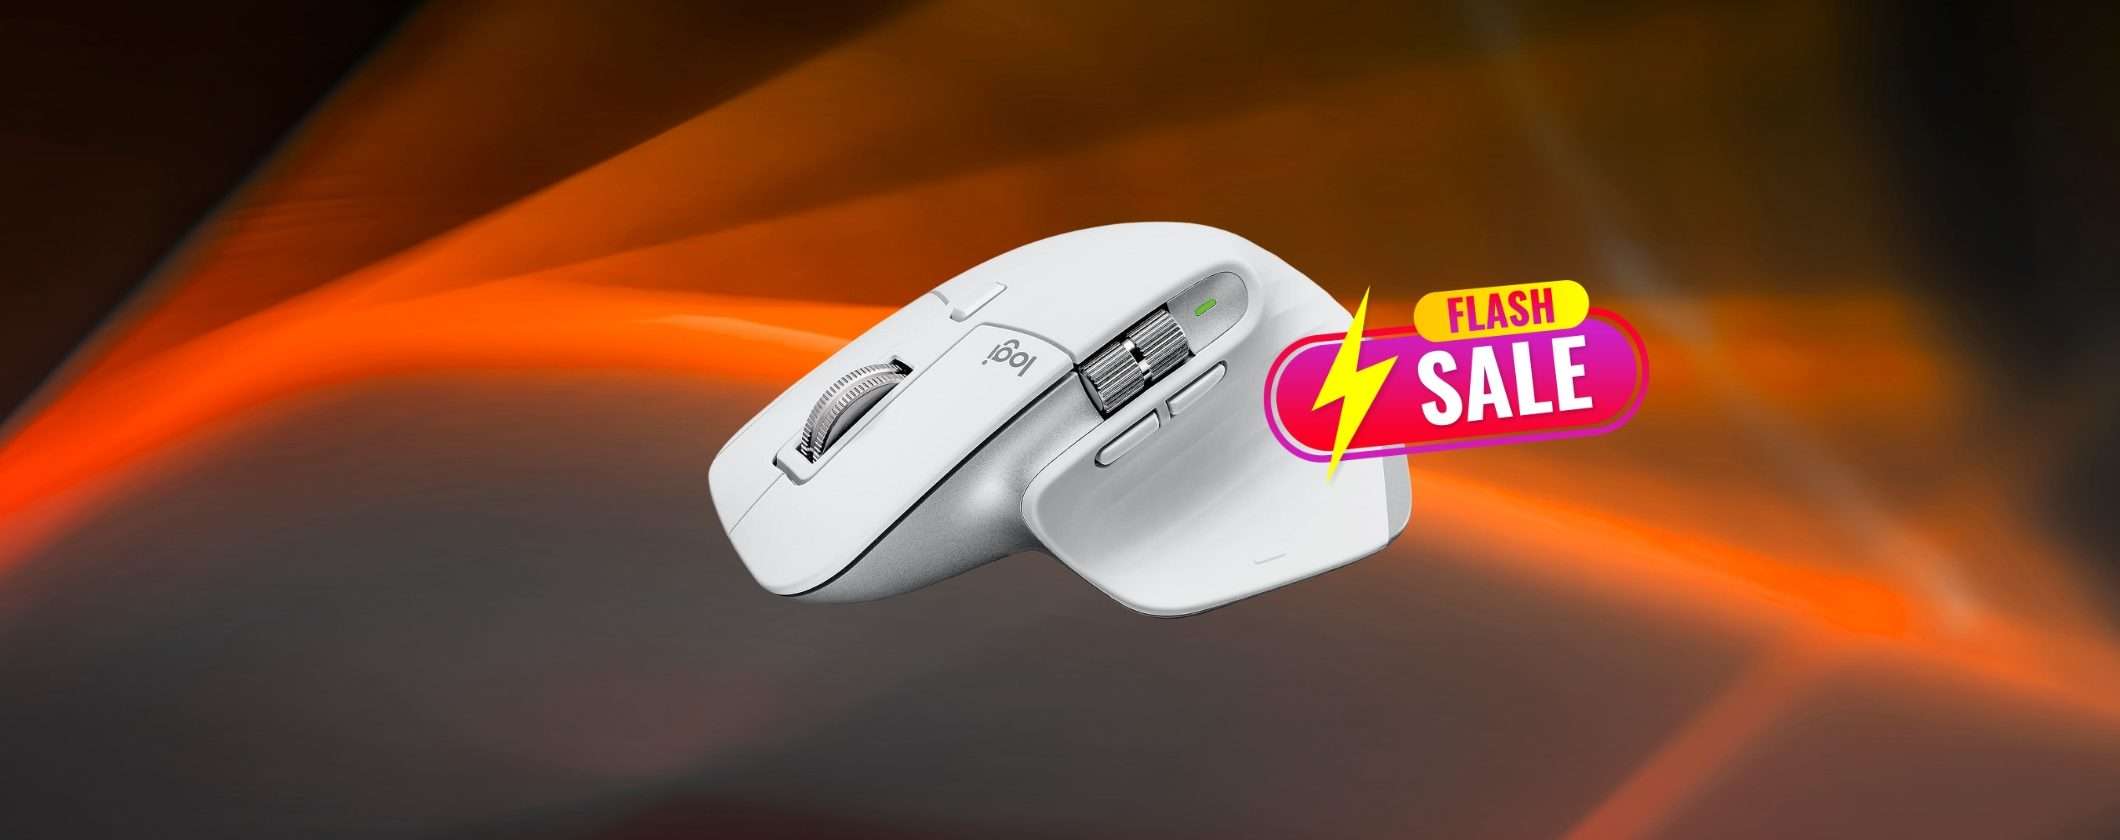 Mouse Logitech MX Master 3S: al 33% di SCONTO è un AFFARE